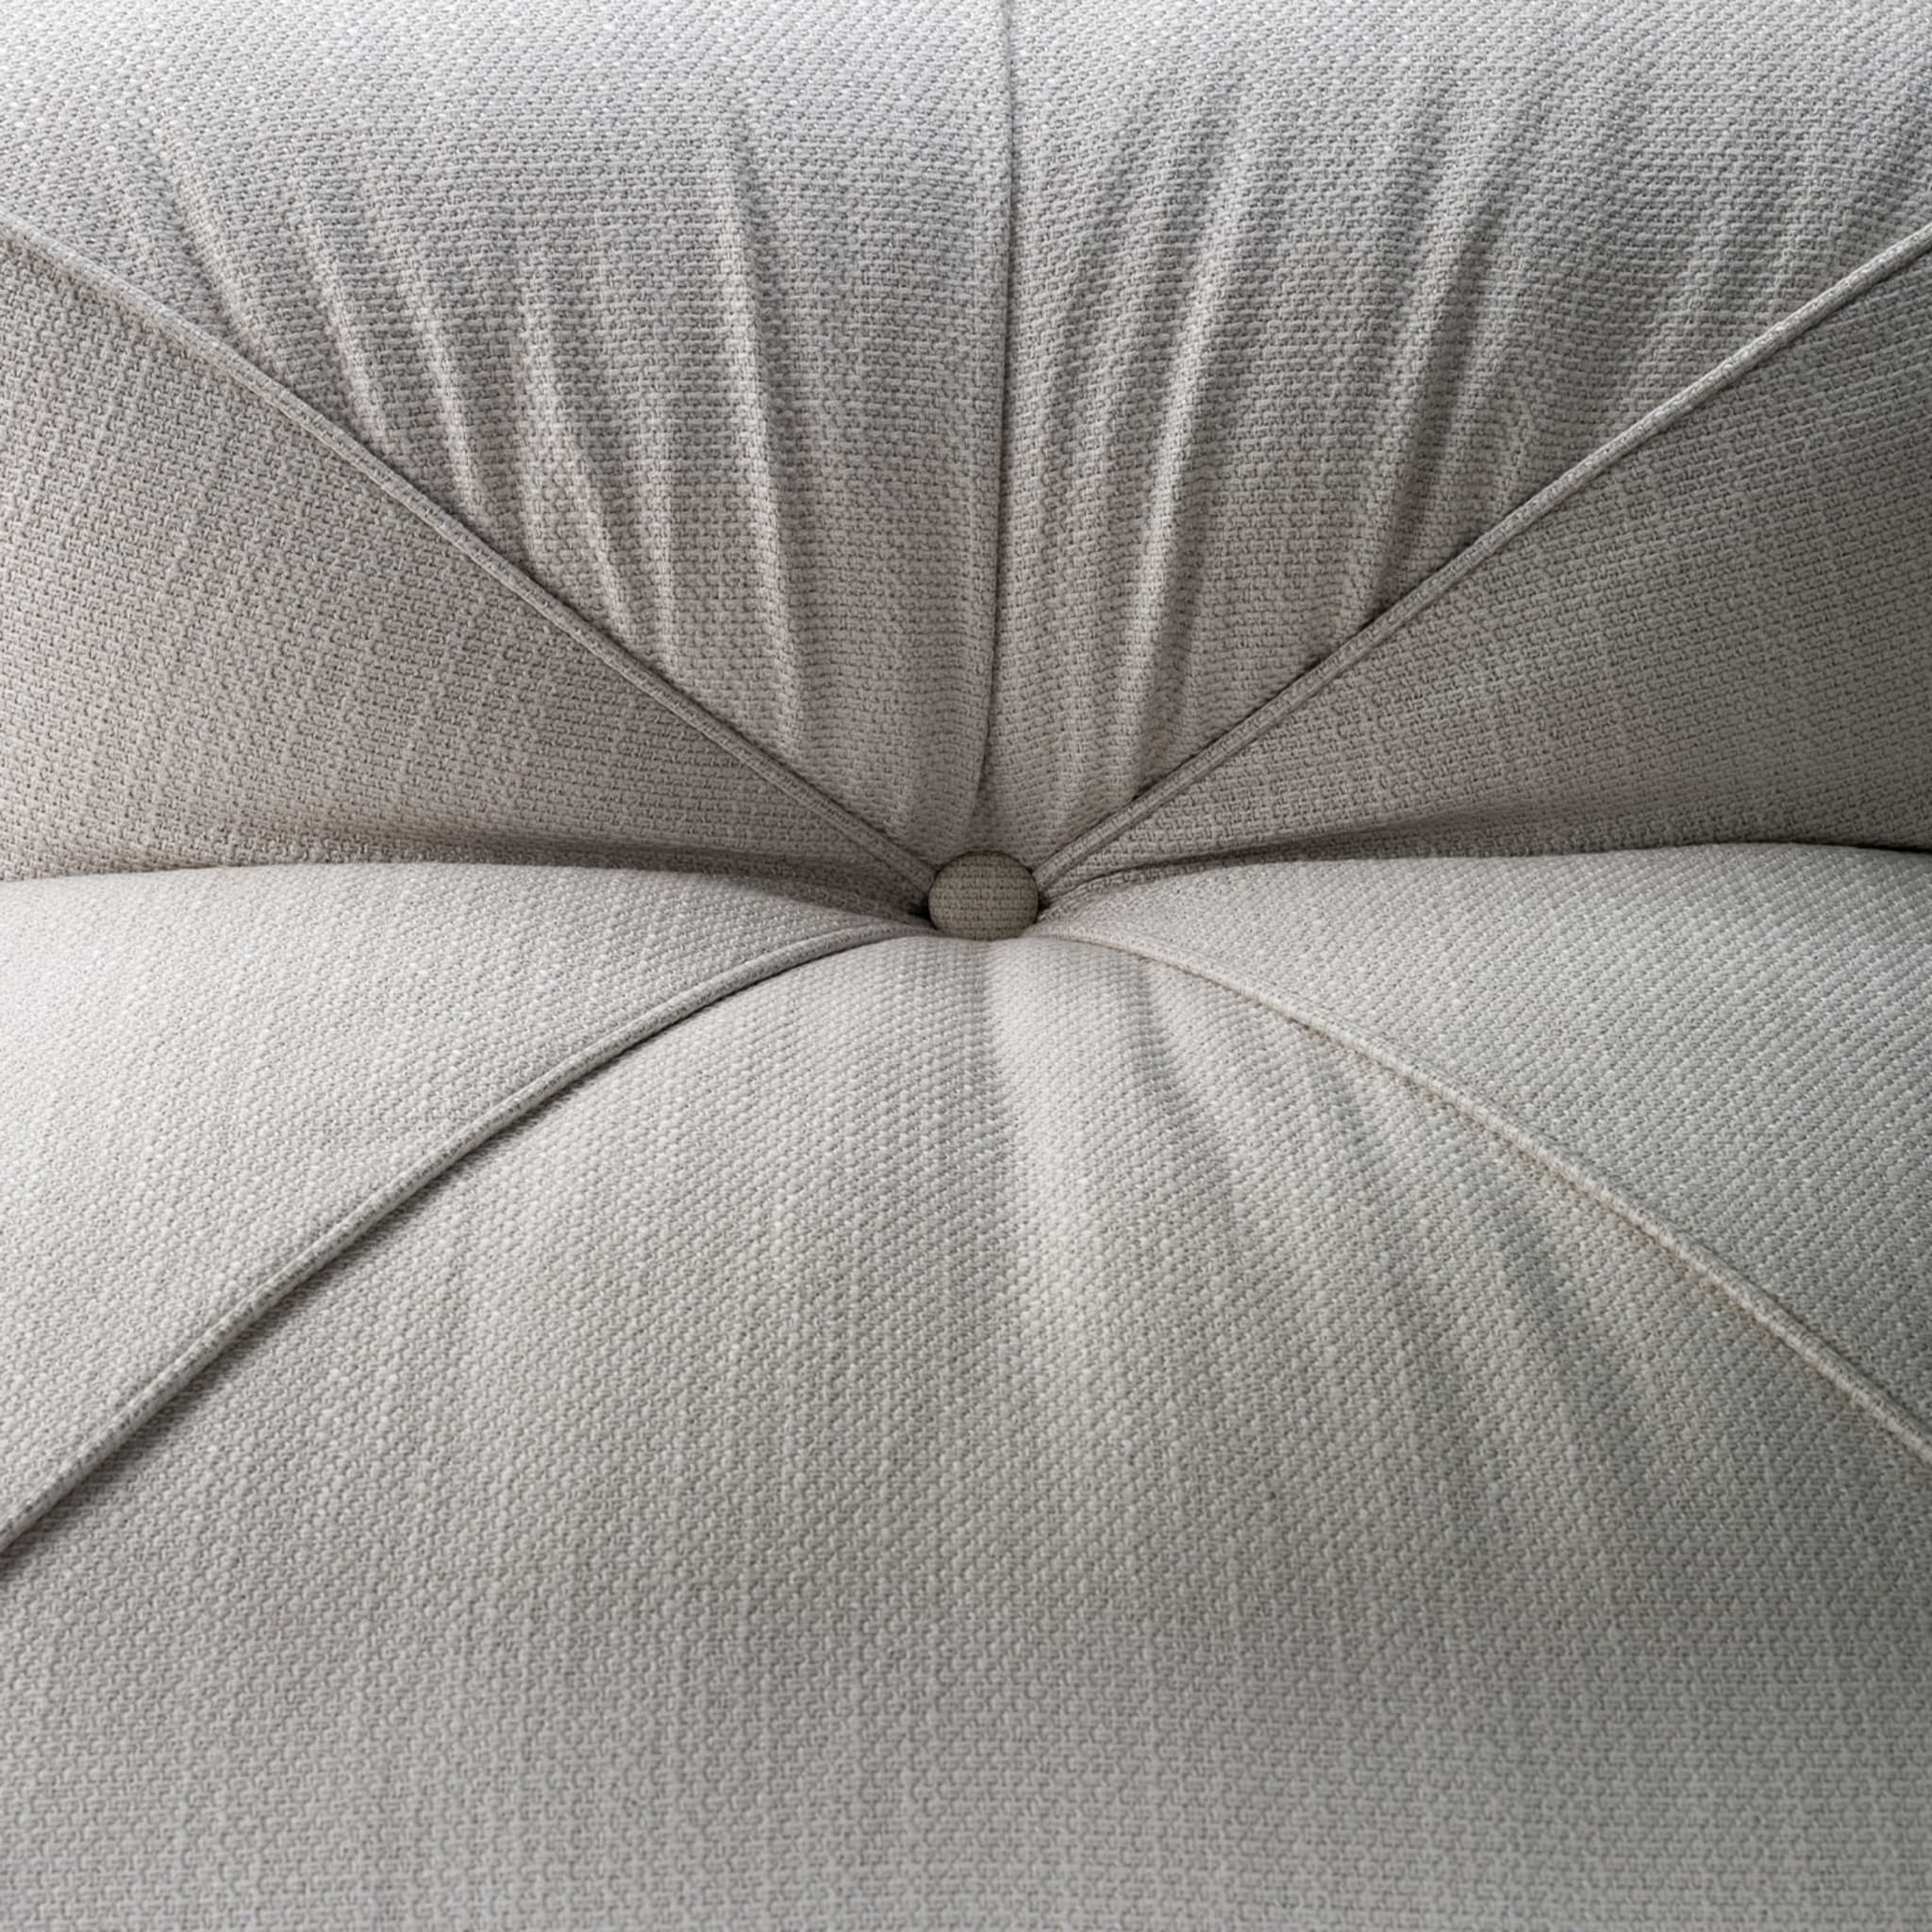 Leisure 4-Seater White Sofa by Lorenza Bozzoli - Alternative view 5